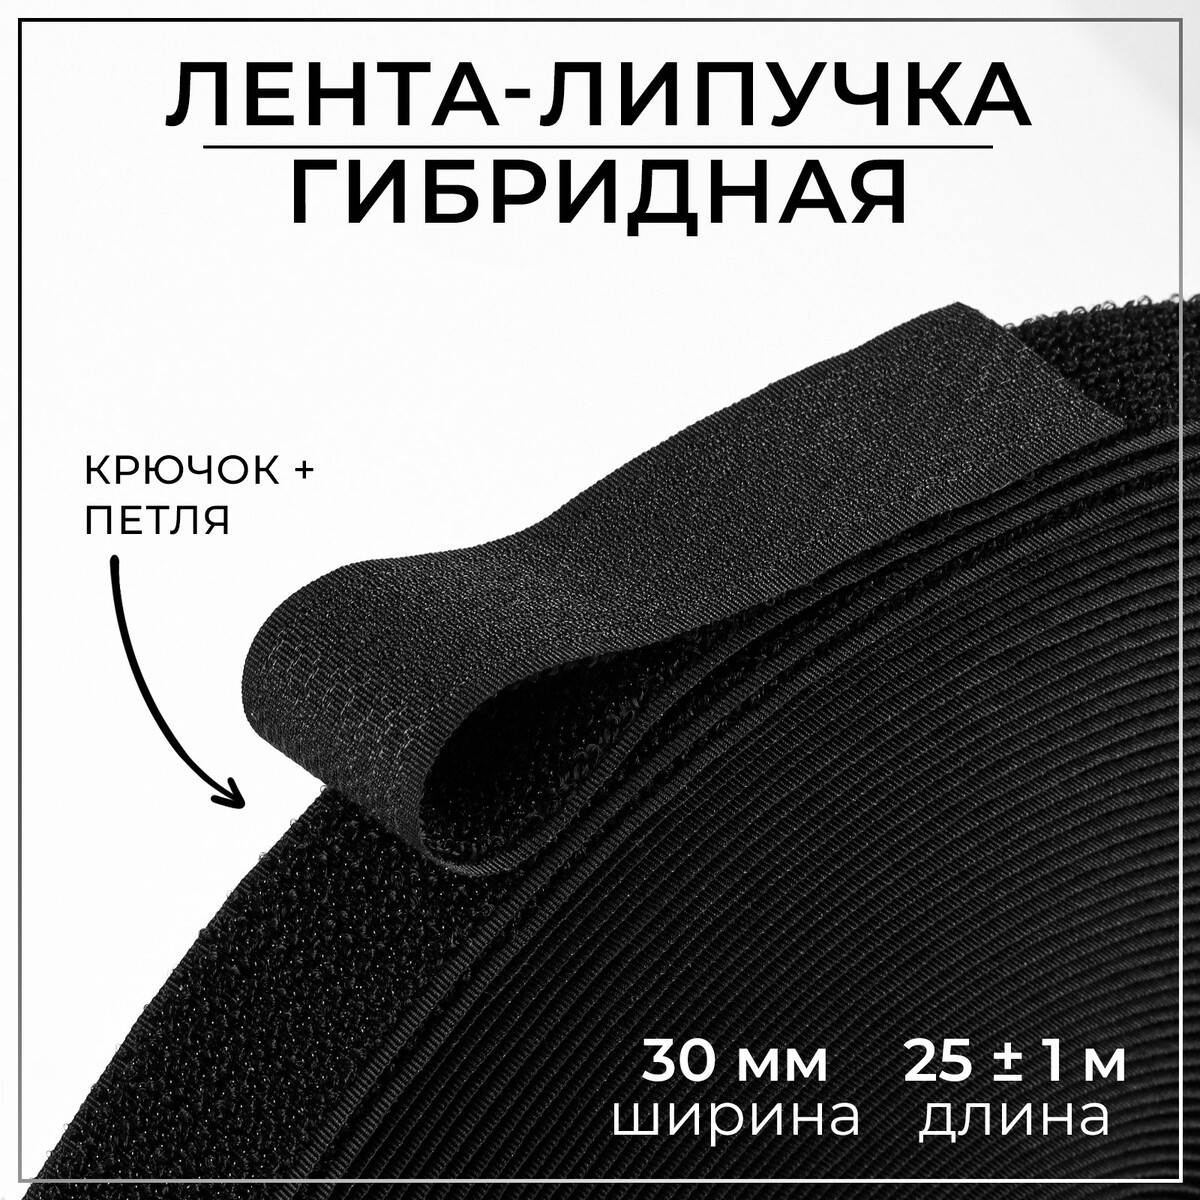 Липучка гибридная, 30 мм × 25 ± 1 м, цвет черный